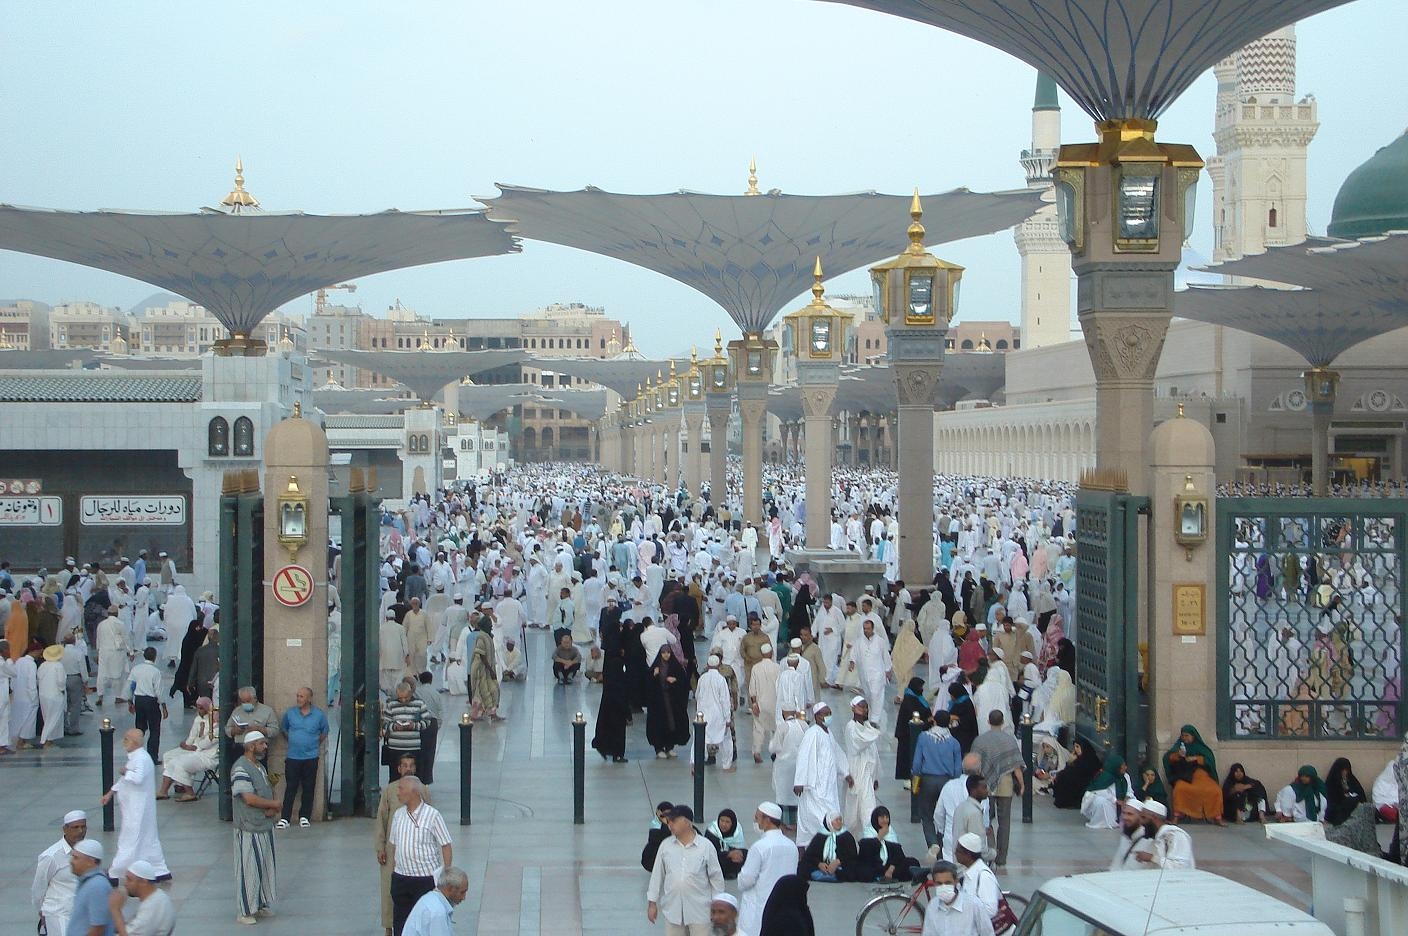   إحصائية: 240 ألف حاج زاروا المدينة بعد تأدية المناسك في مكة